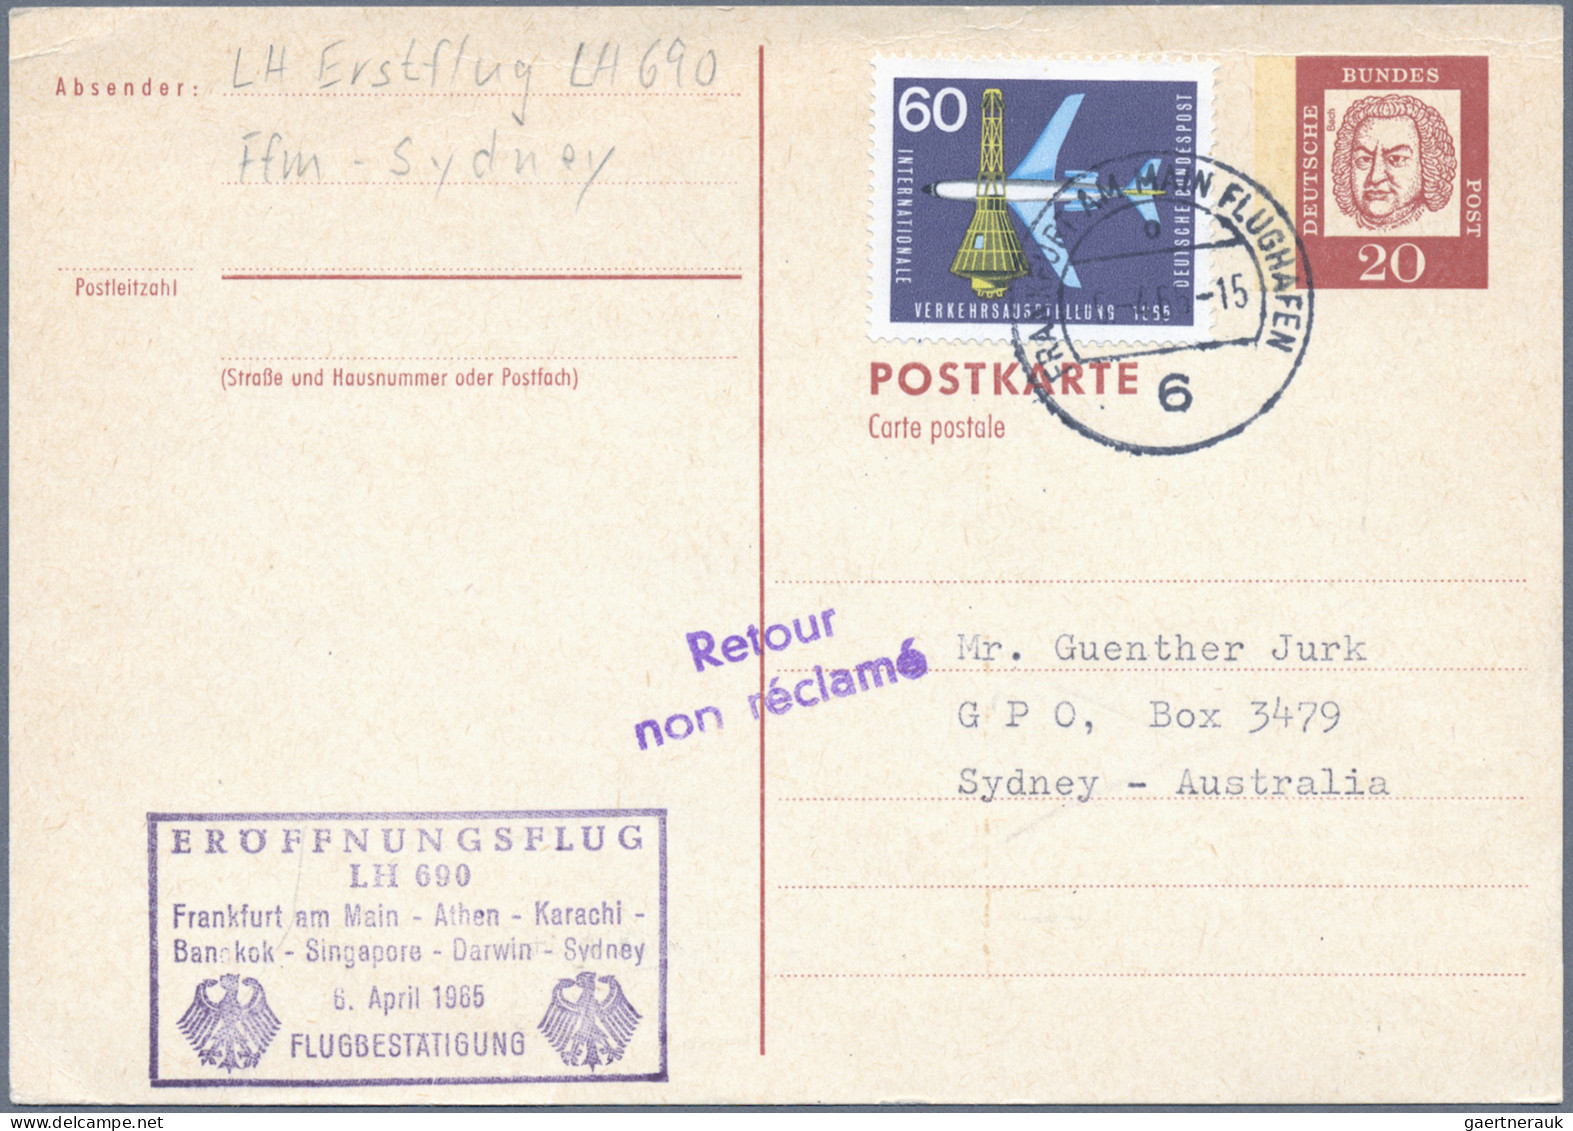 Air Mail - Germany: 1912/1987, inhaltsreiche Partie von ca. 210 Briefen und Kart